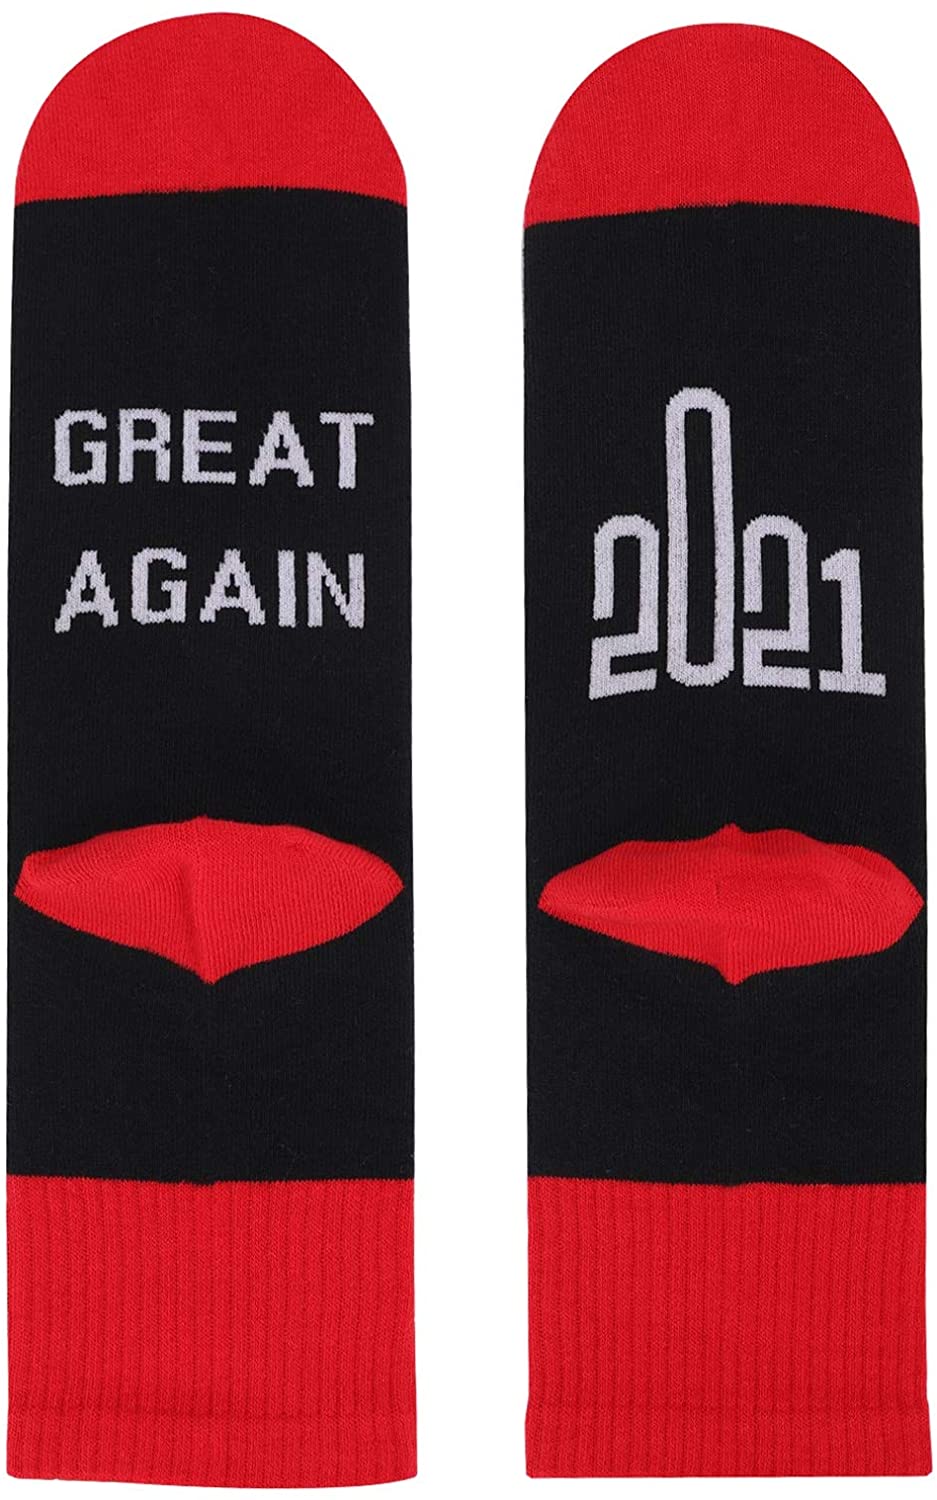 3 Pairs 2021 Socks Middle Finger Socks 2021 Great Again Novelty Socks